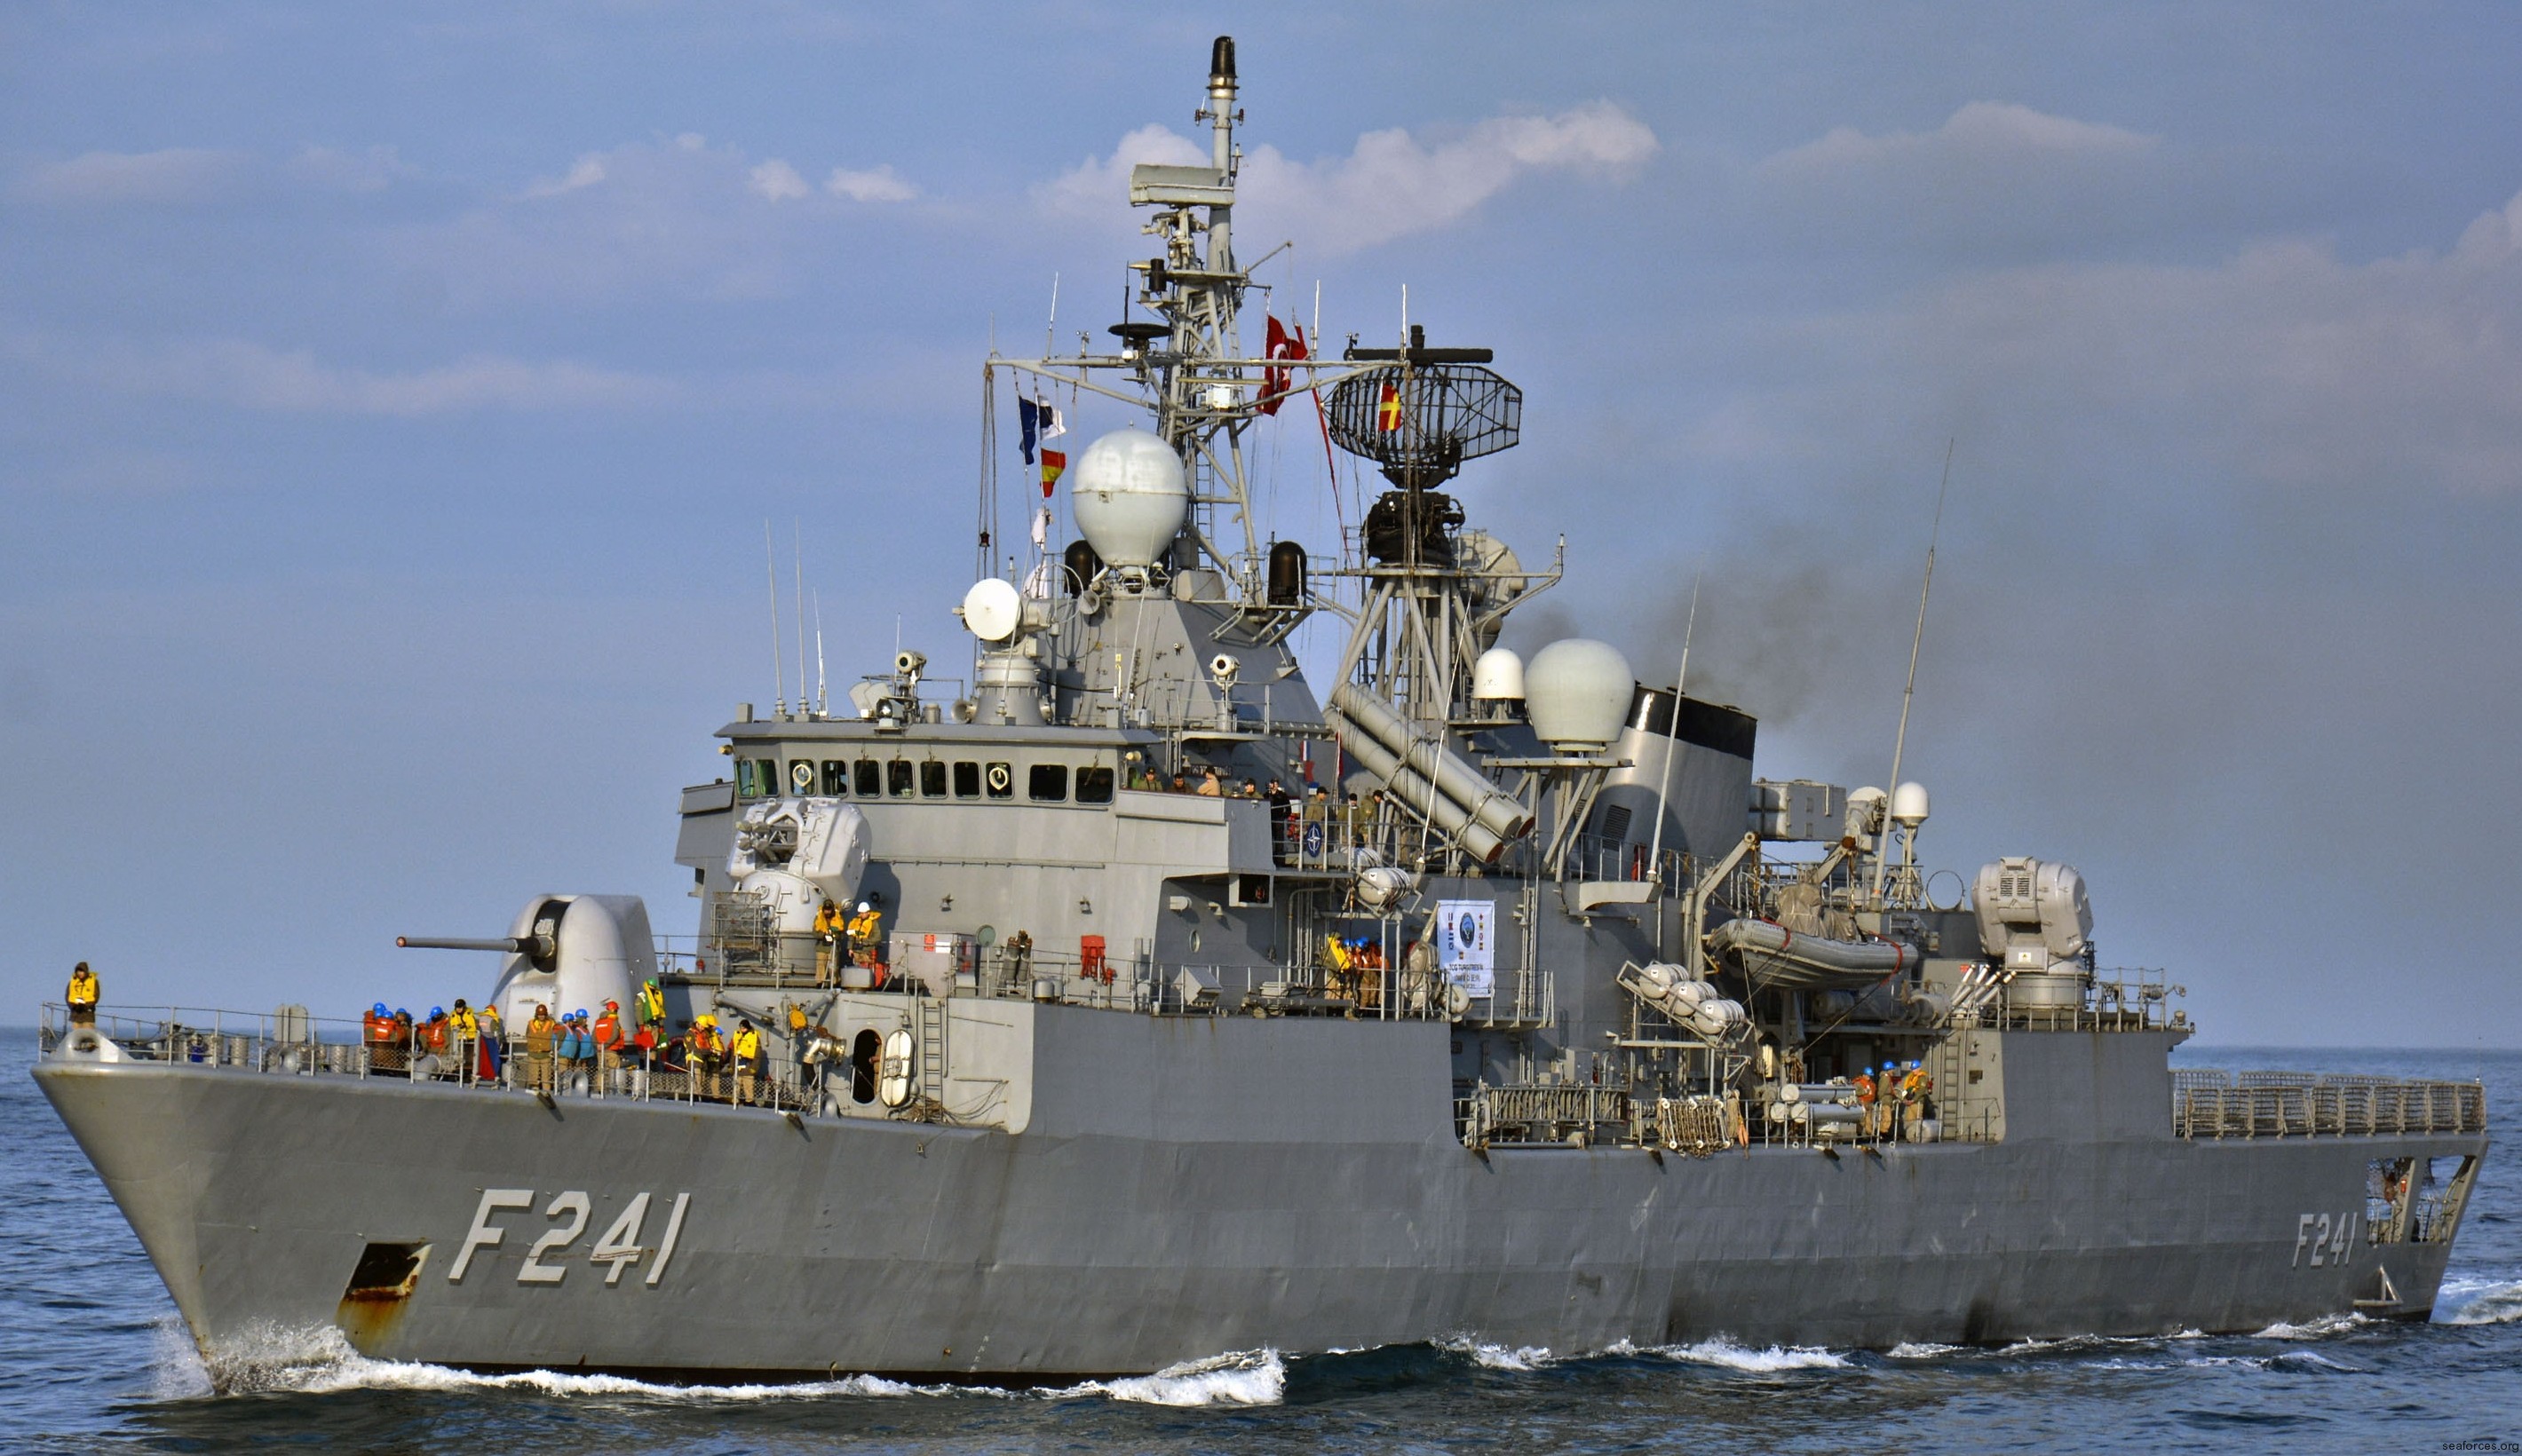 yavuz class meko-200tn frigate turkish navy türk deniz kuvvetleri turgutreis fatih yildirim tcg sea sparrow sam harpoon ssm 04x